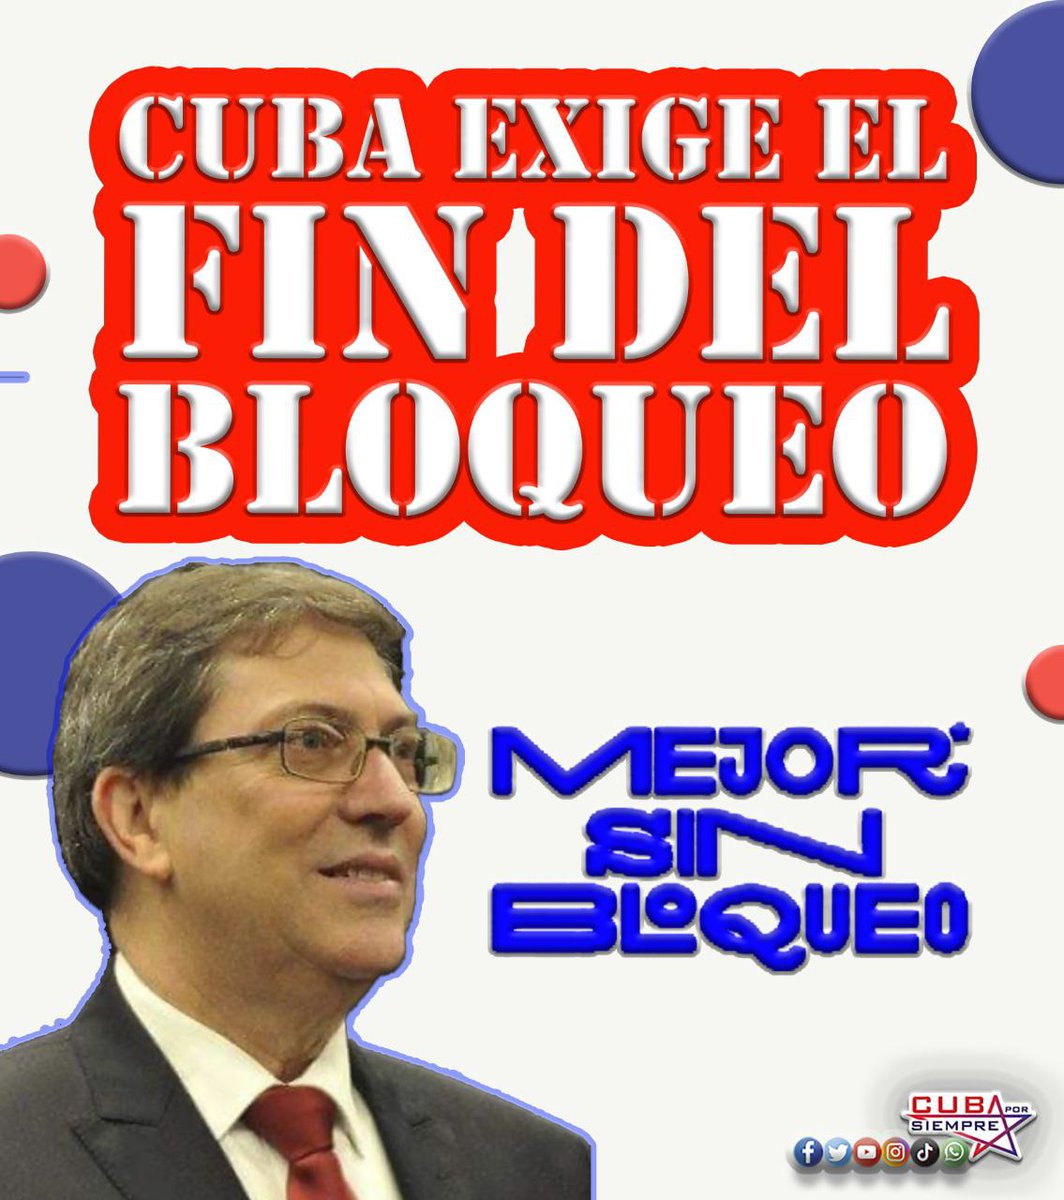 Noas Bloqueo a Cuba.
#MejorSinBolqueo